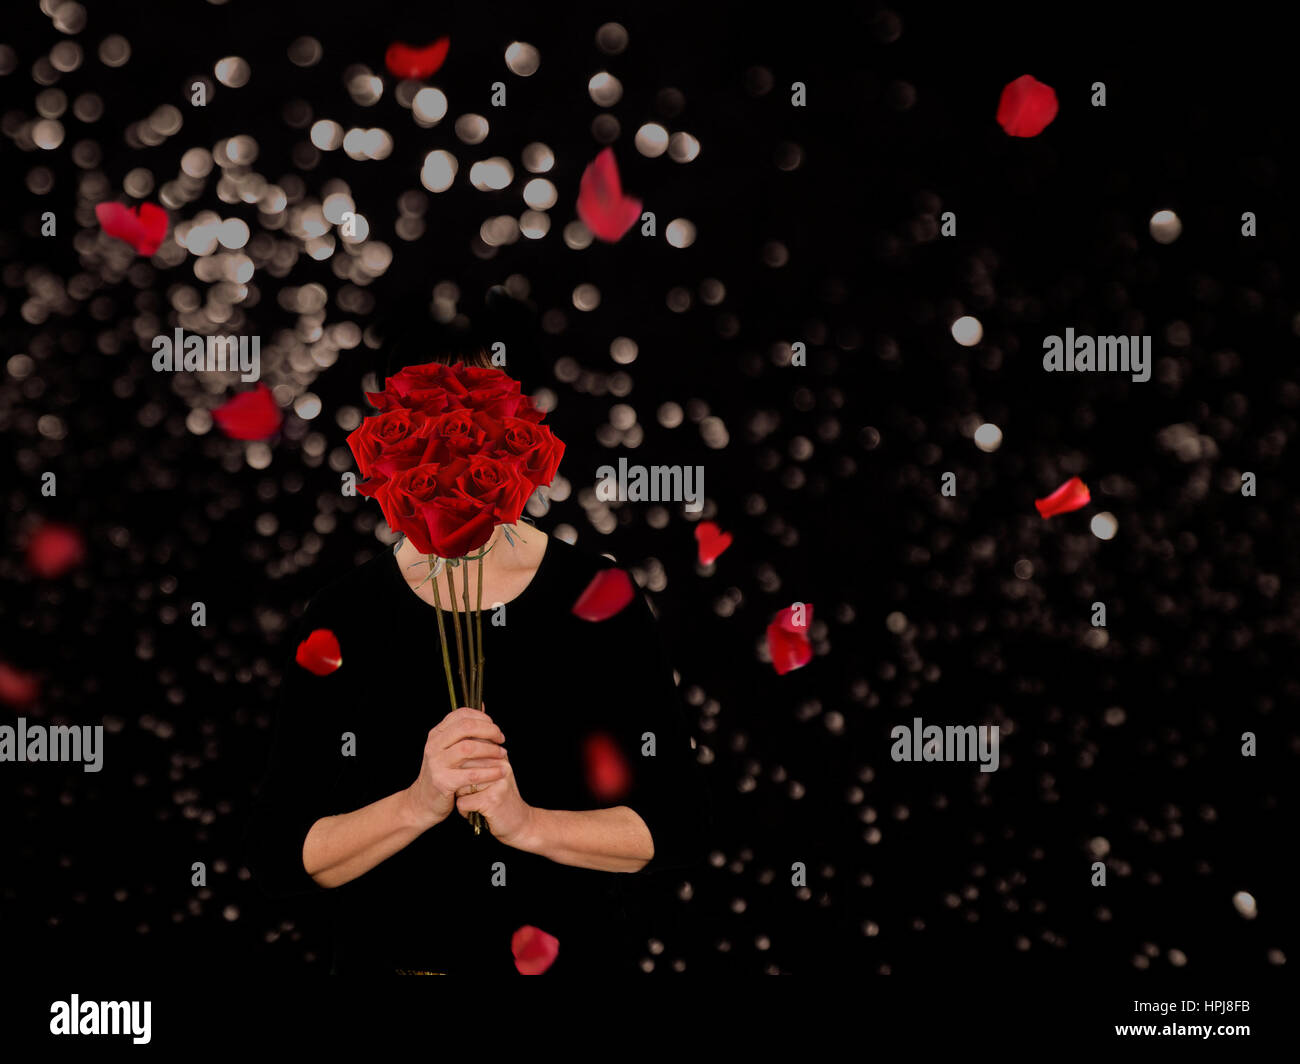 Woman enjoying perfume of roses. Dramatic black background. Stock Photo